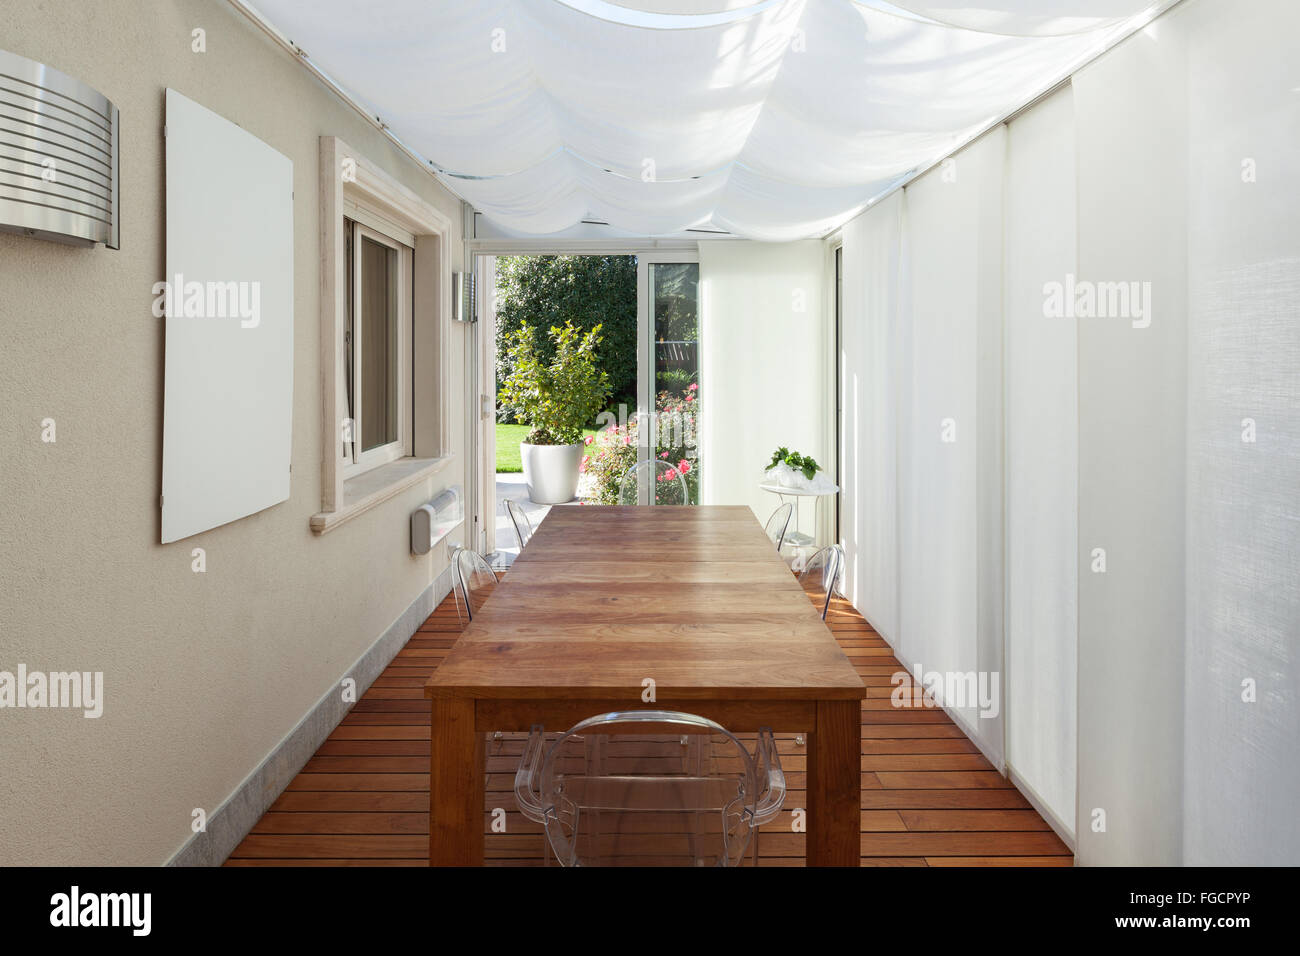 Architettura; veranda con tende bianche e tavolo in legno Foto Stock